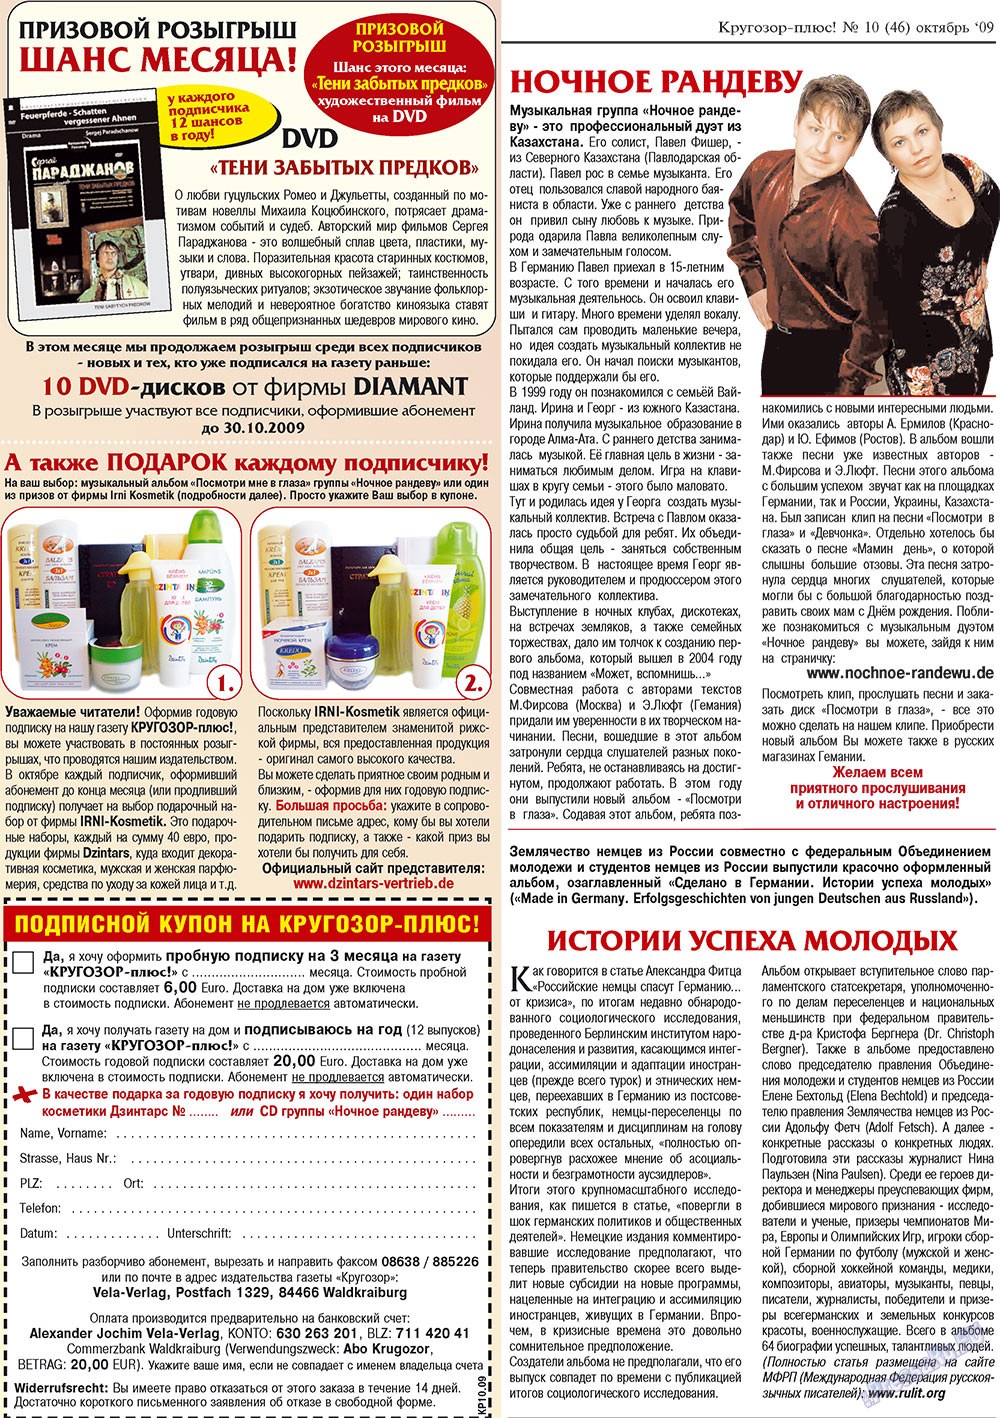 Кругозор плюс!, газета. 2009 №10 стр.56